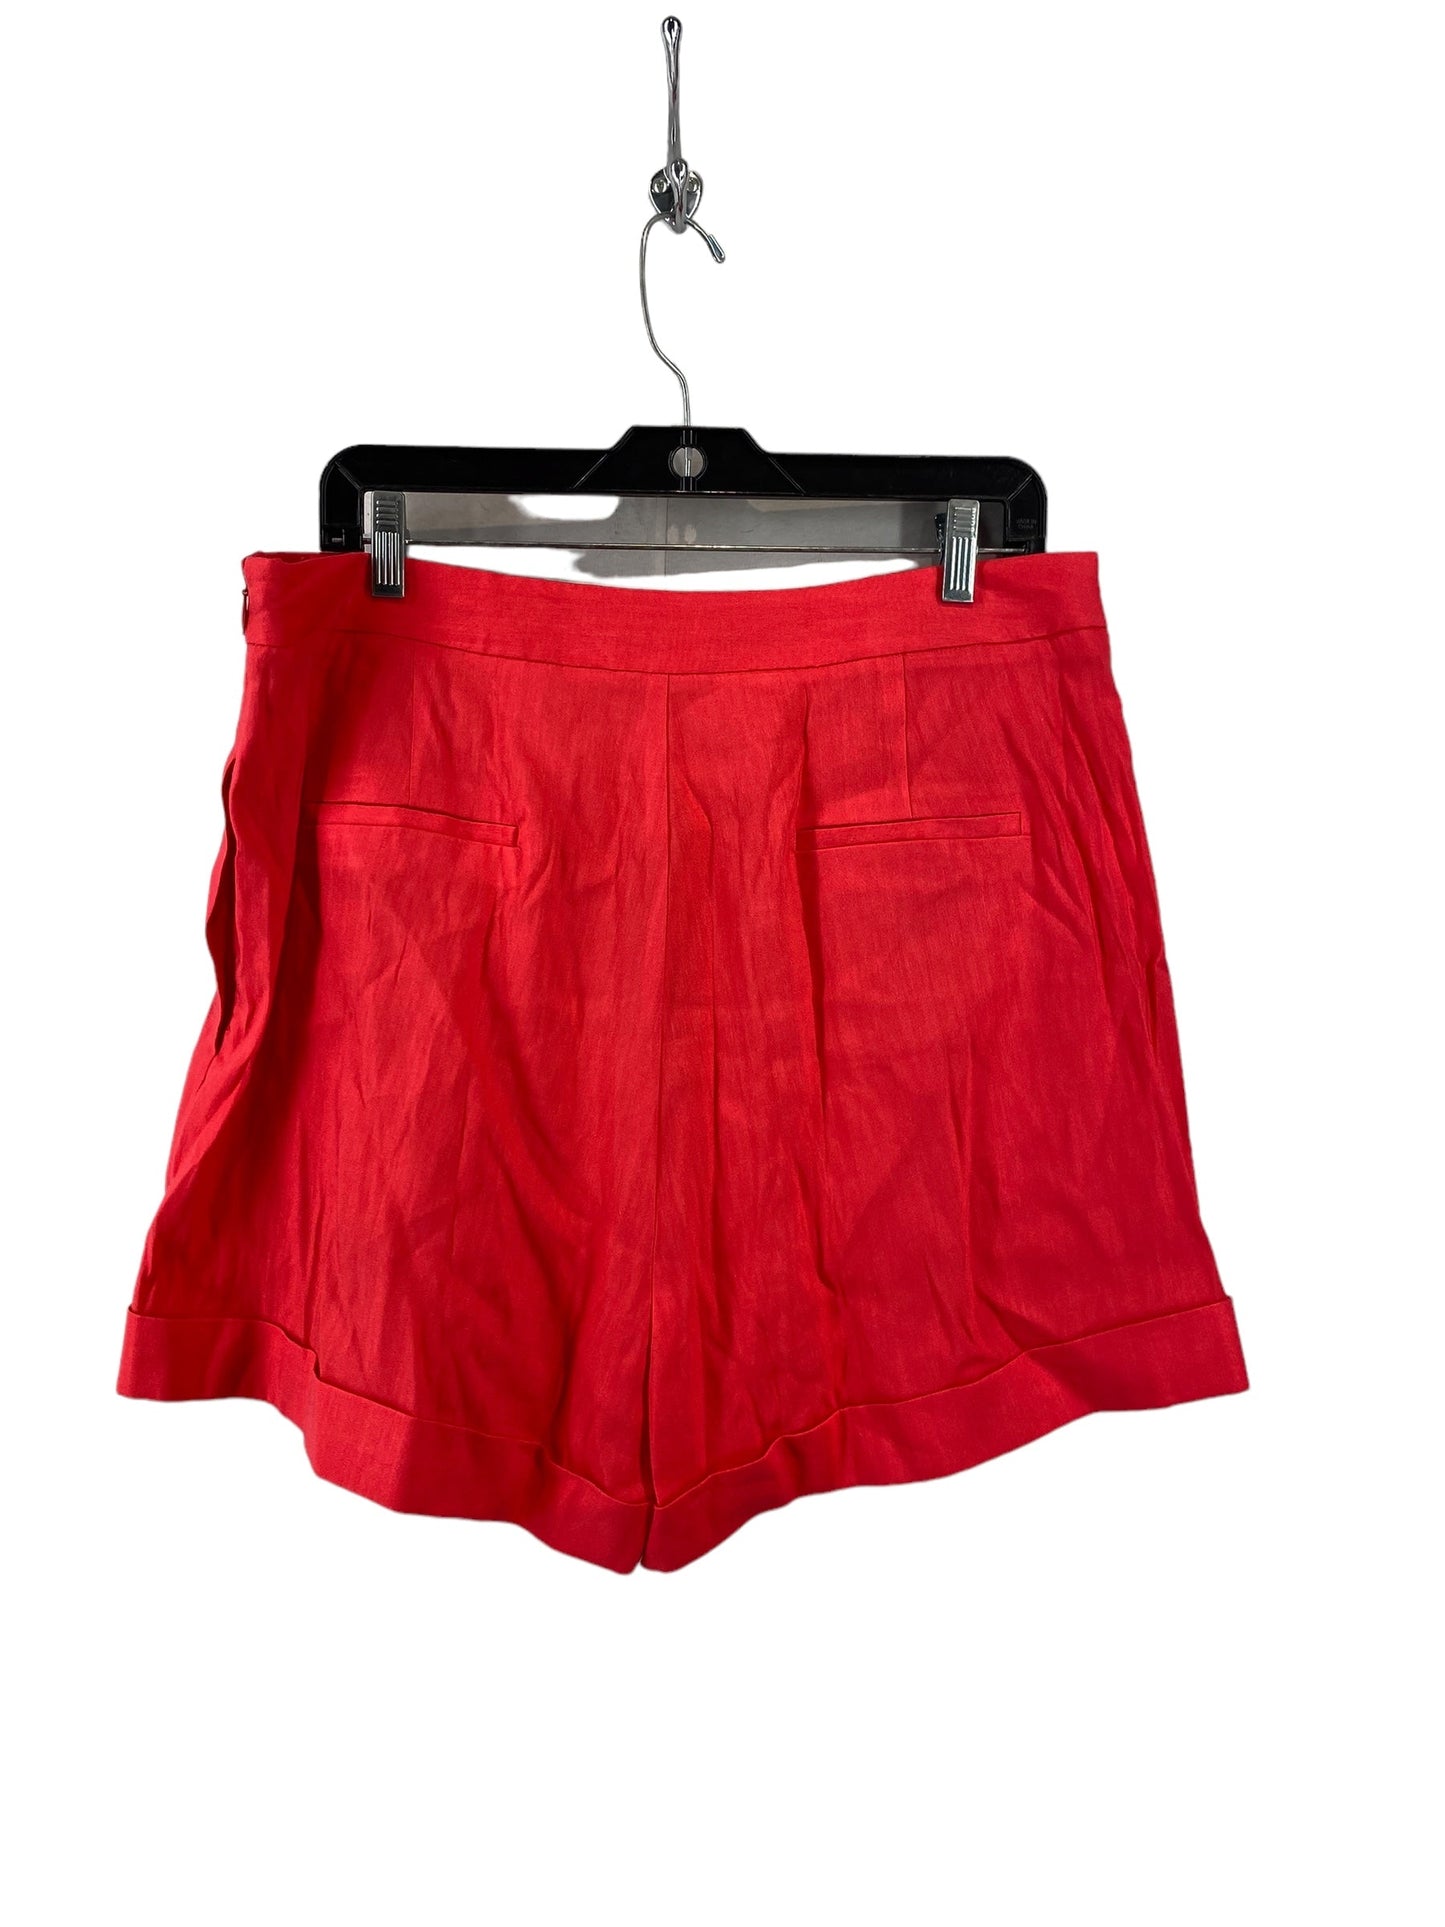 Shorts By Antonio Melani  Size: 14